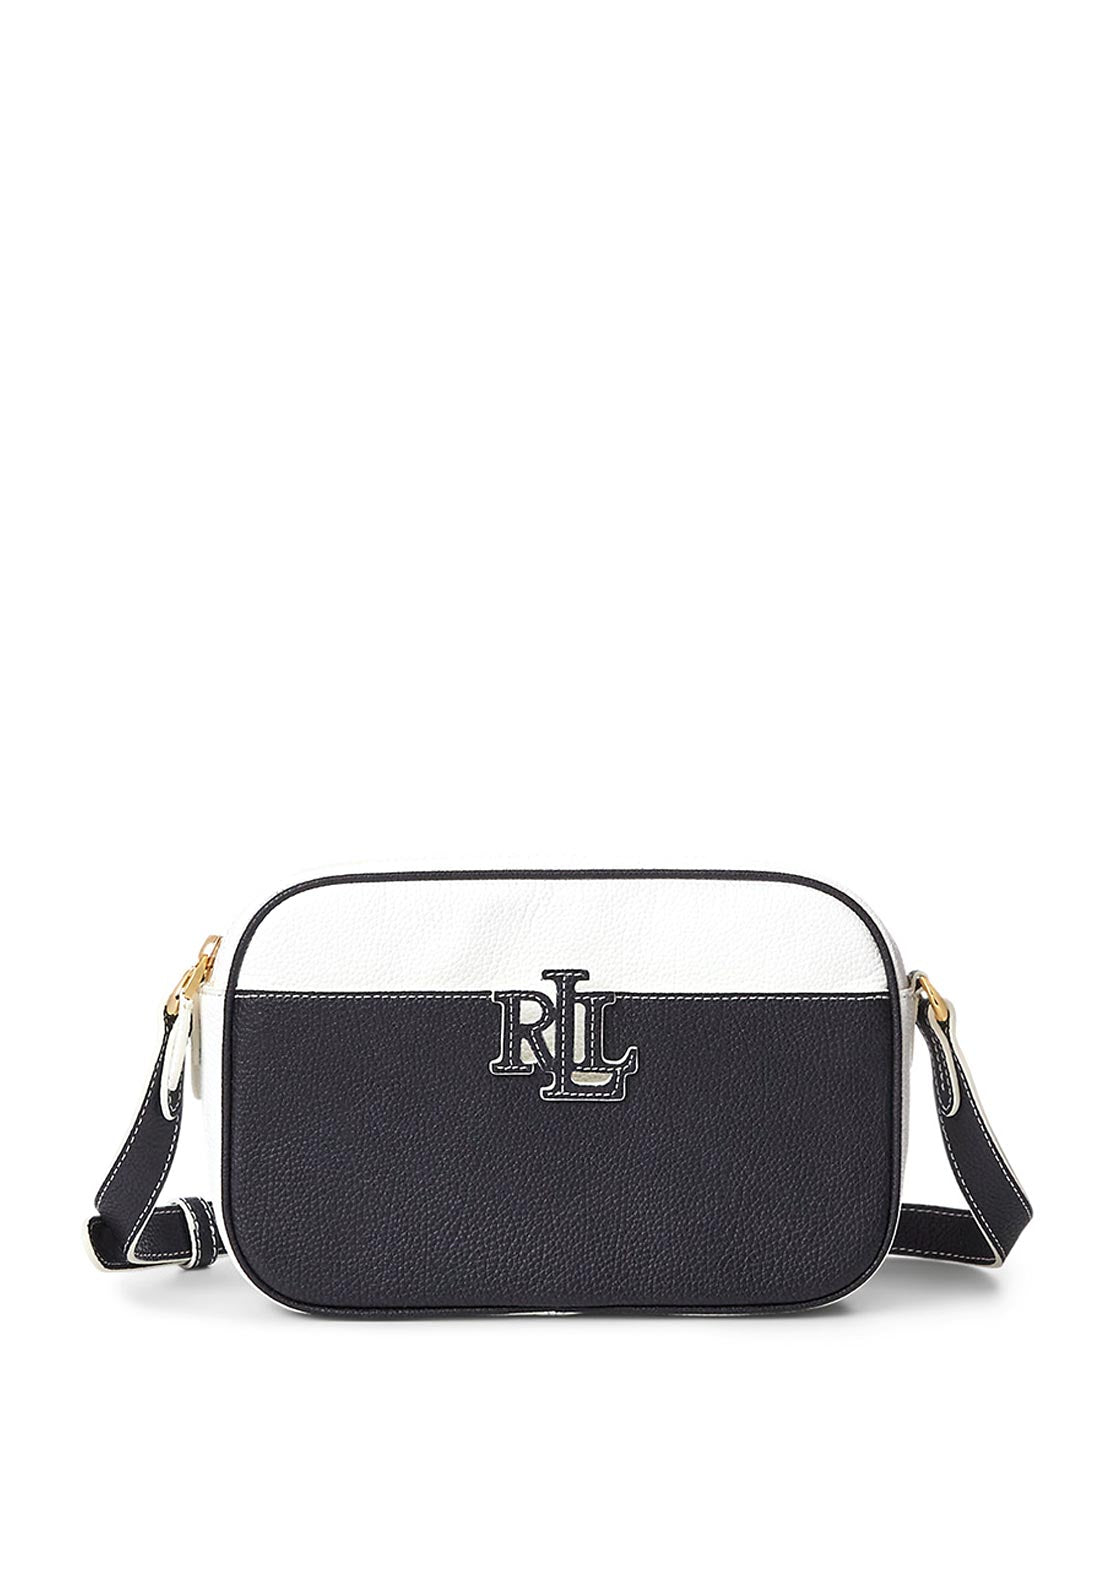 Ralph Lauren Carrie Leather Crossbody Bag, White Navy - McElhinneys